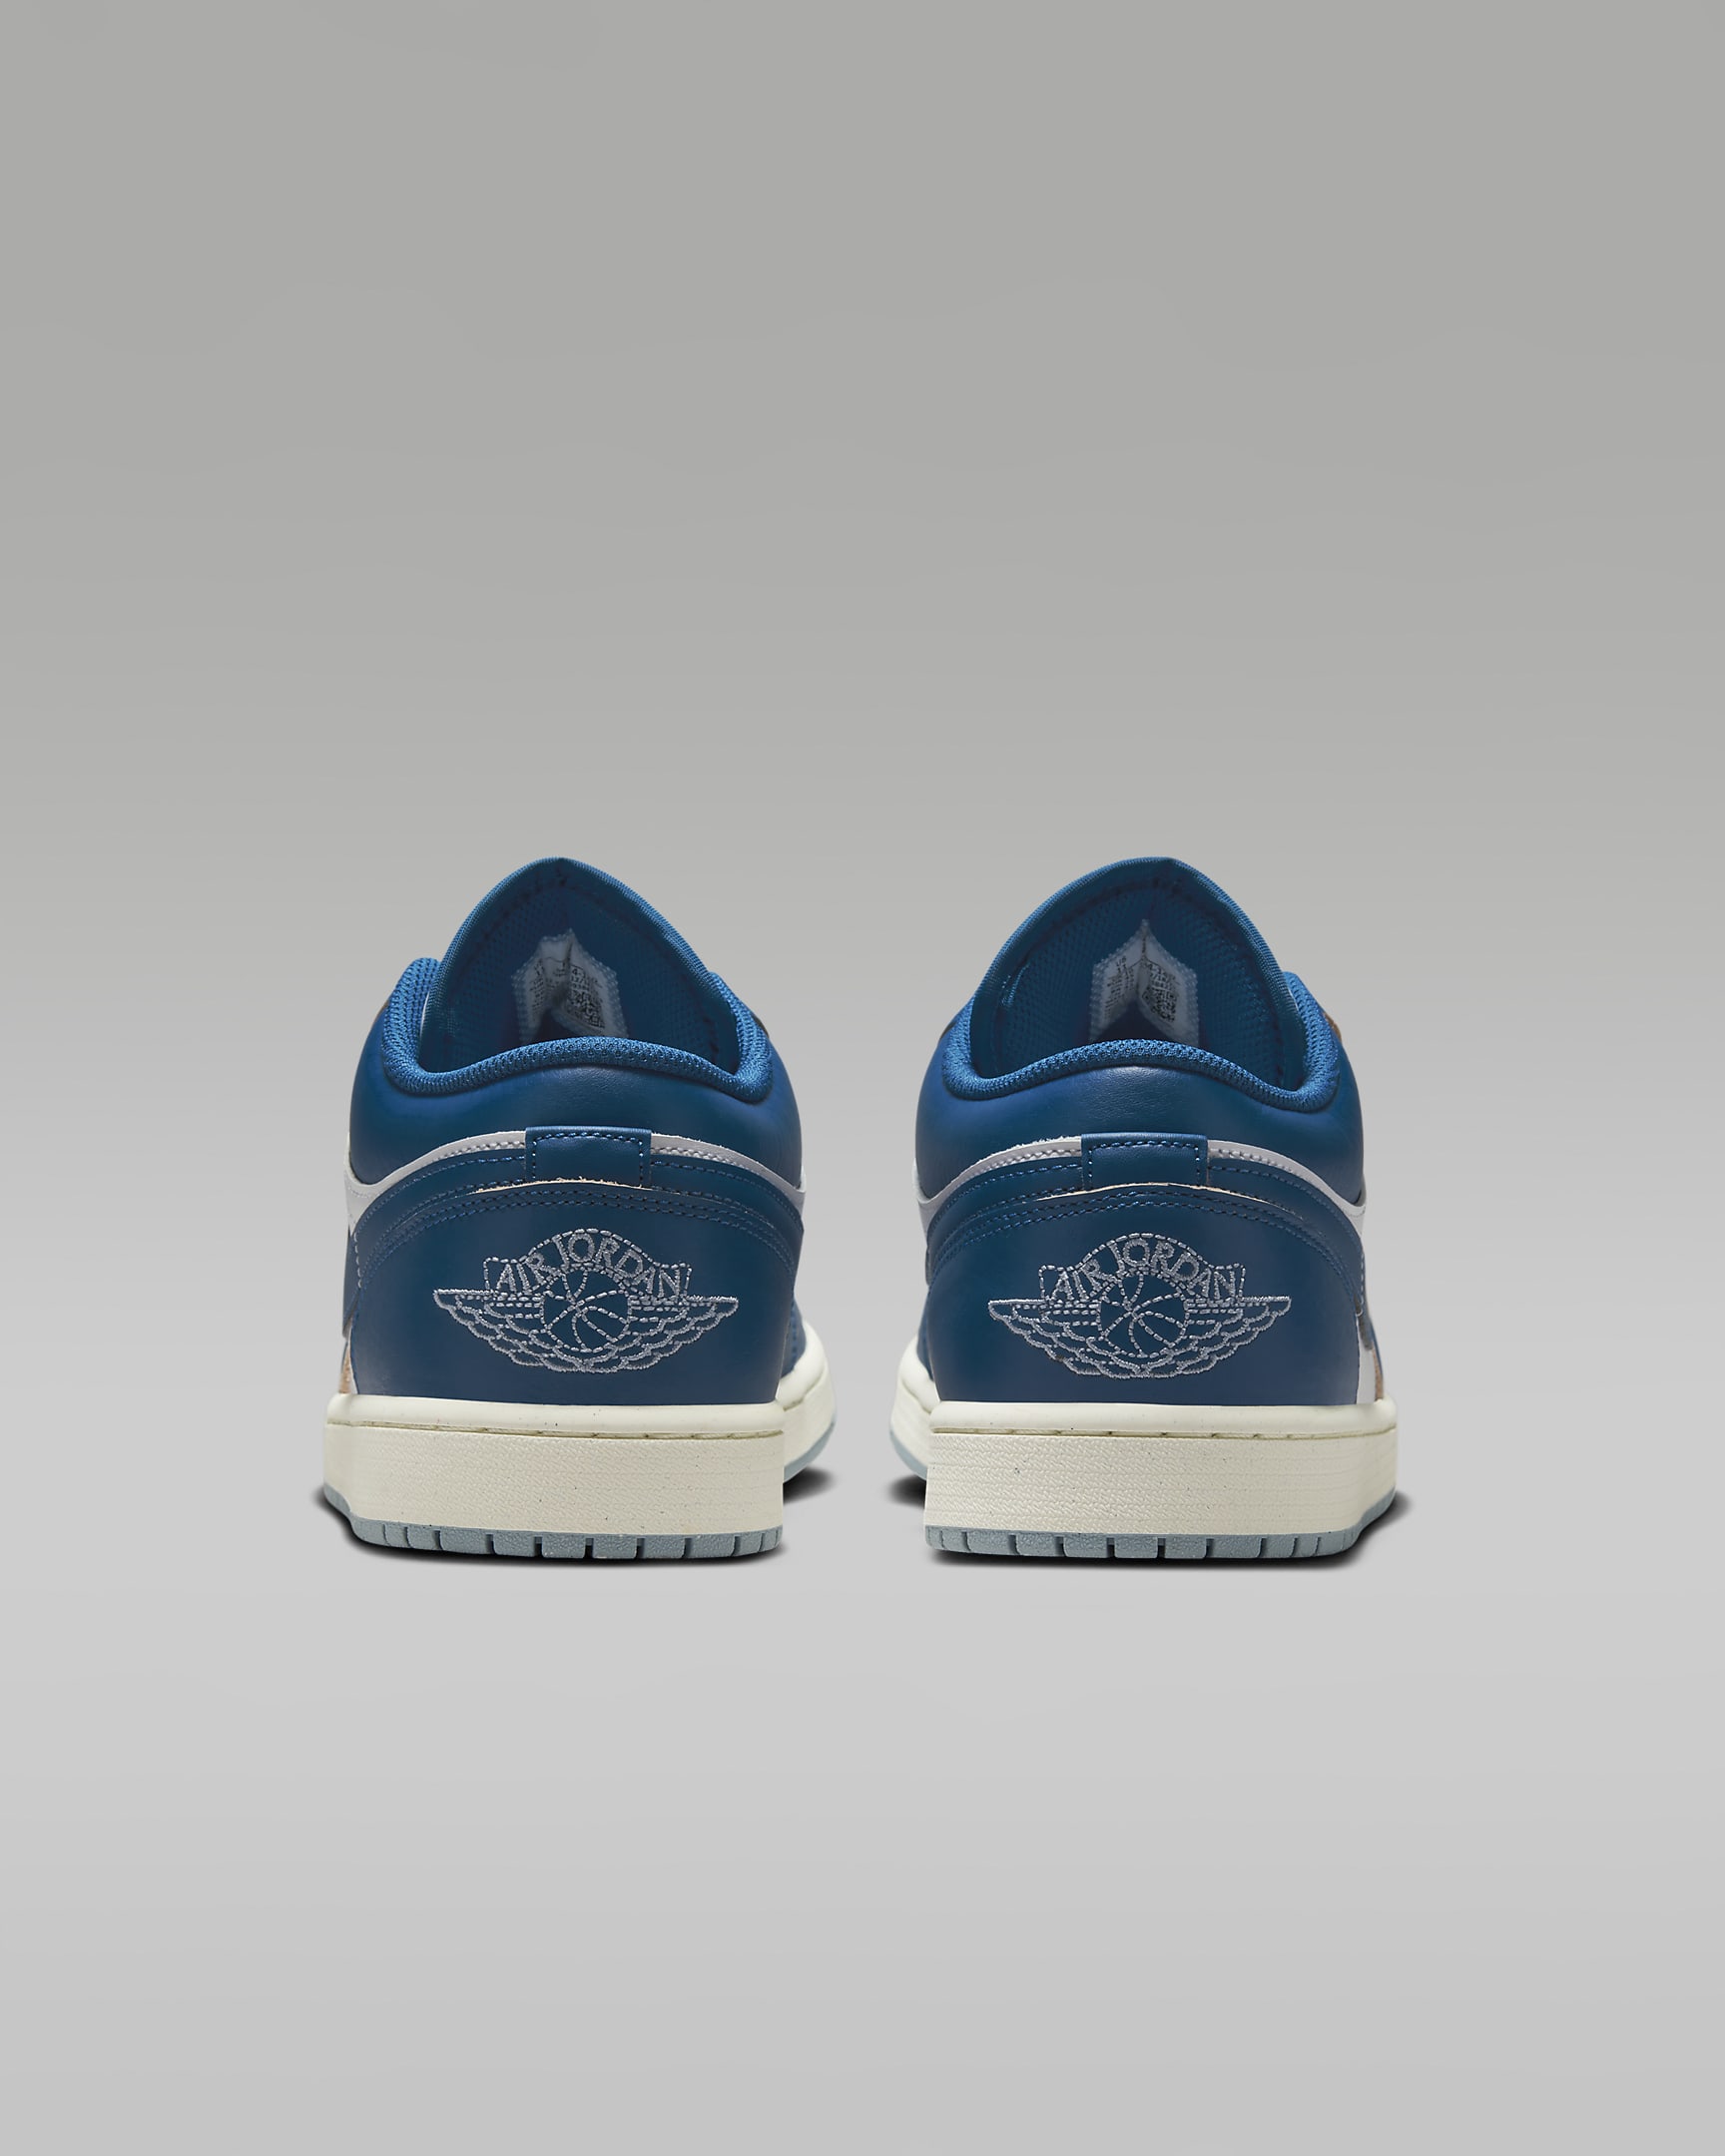 Air Jordan 1 Low SE Men's Shoes - White/Blue Grey/Sail/Industrial Blue